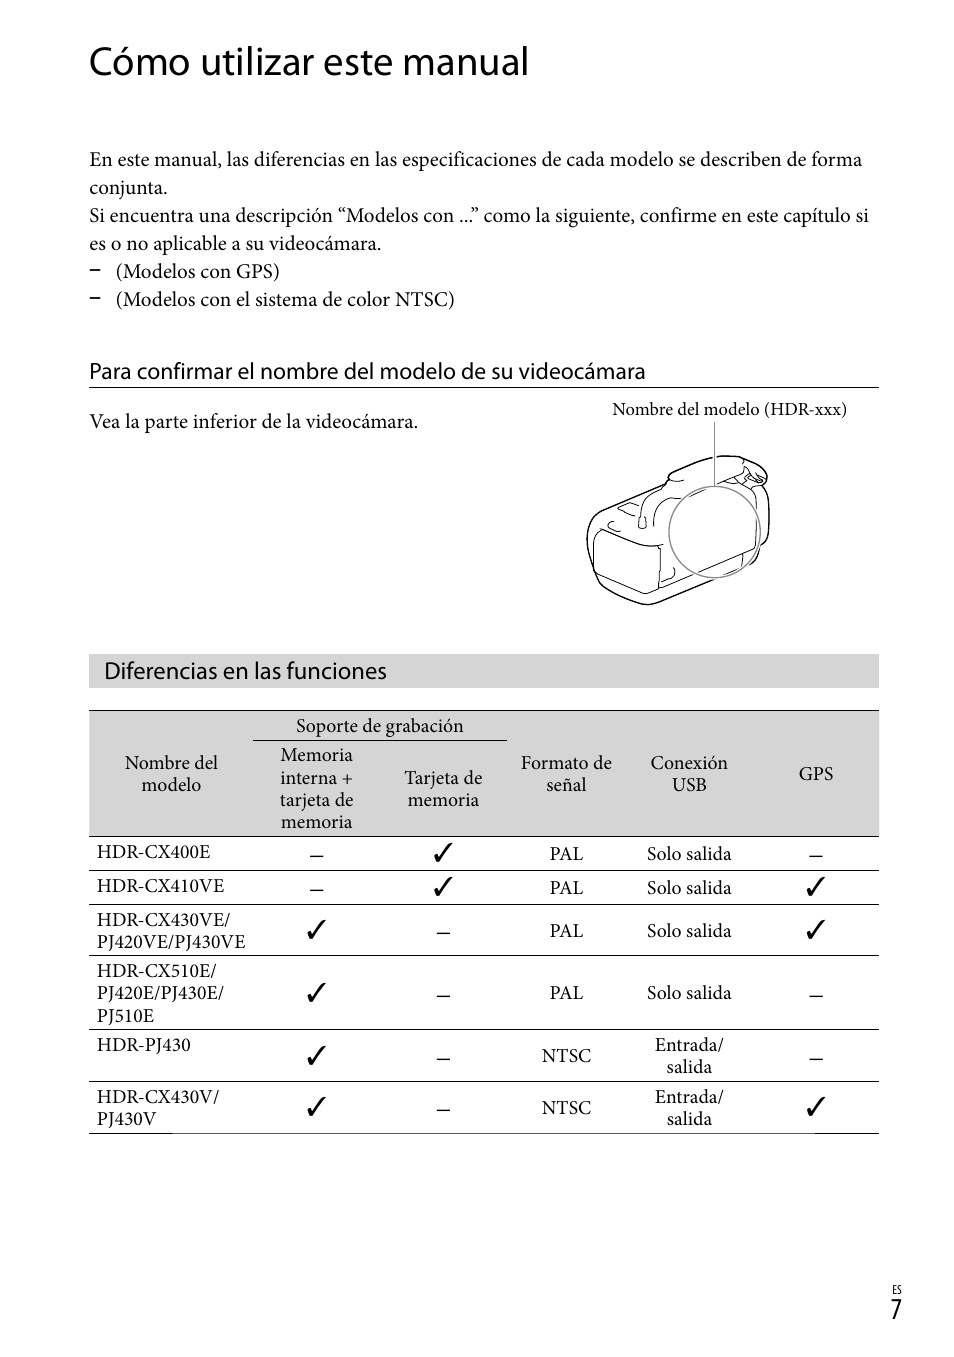 Cómo utilizar este manual, Diferencias en las funciones | Sony HDR-CX430V Manual del usuario | Página 7 / 76